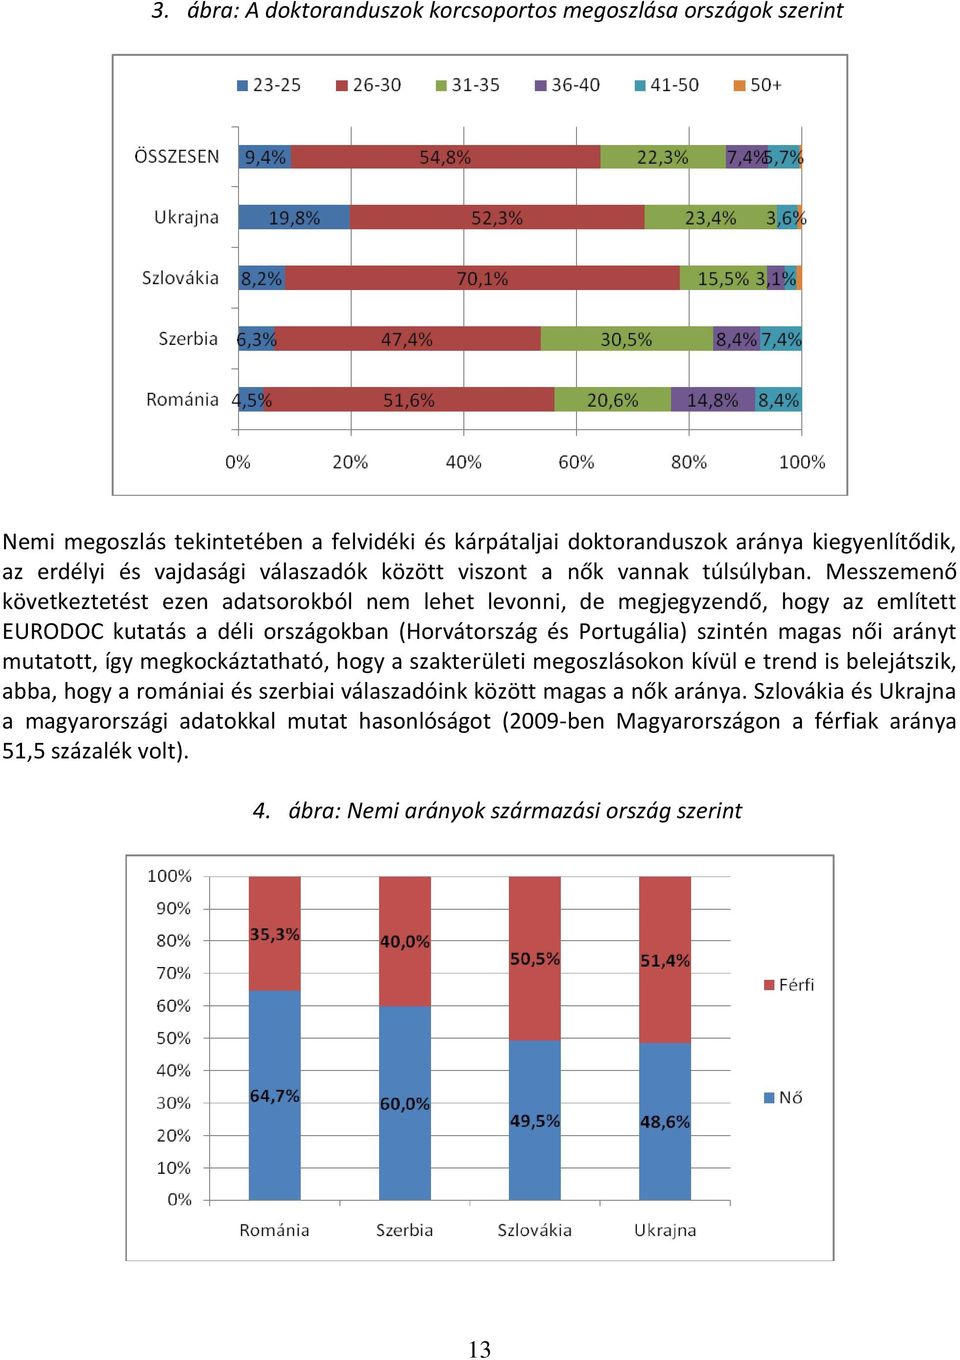 Messzemenő következtetést ezen adatsorokból nem lehet levonni, de megjegyzendő, hogy az említett EURODOC kutatás a déli országokban (Horvátország és Portugália) szintén magas női arányt